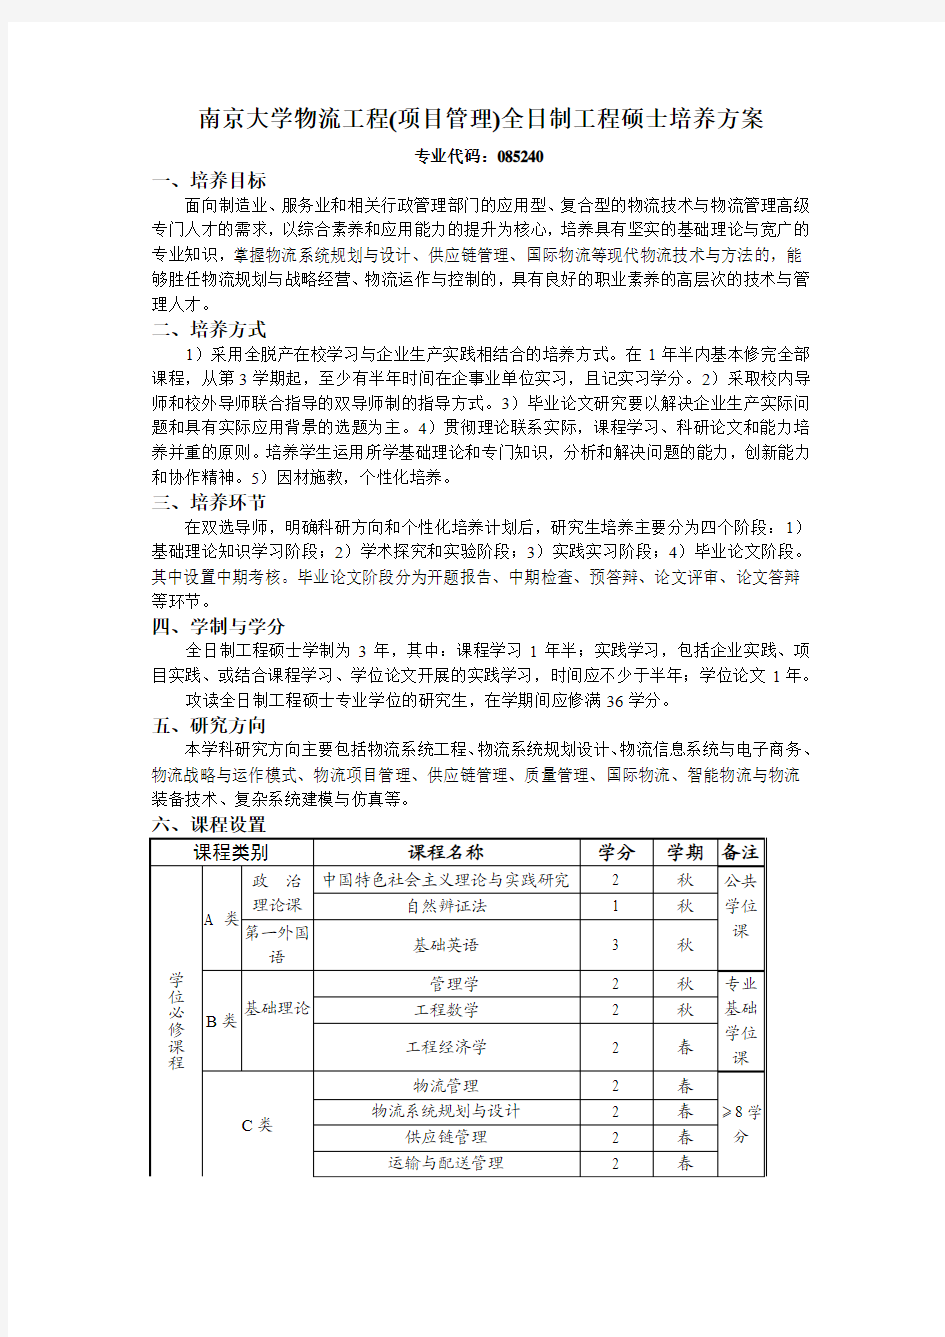 南京大学工程管理学院项目管理全日制培养方案